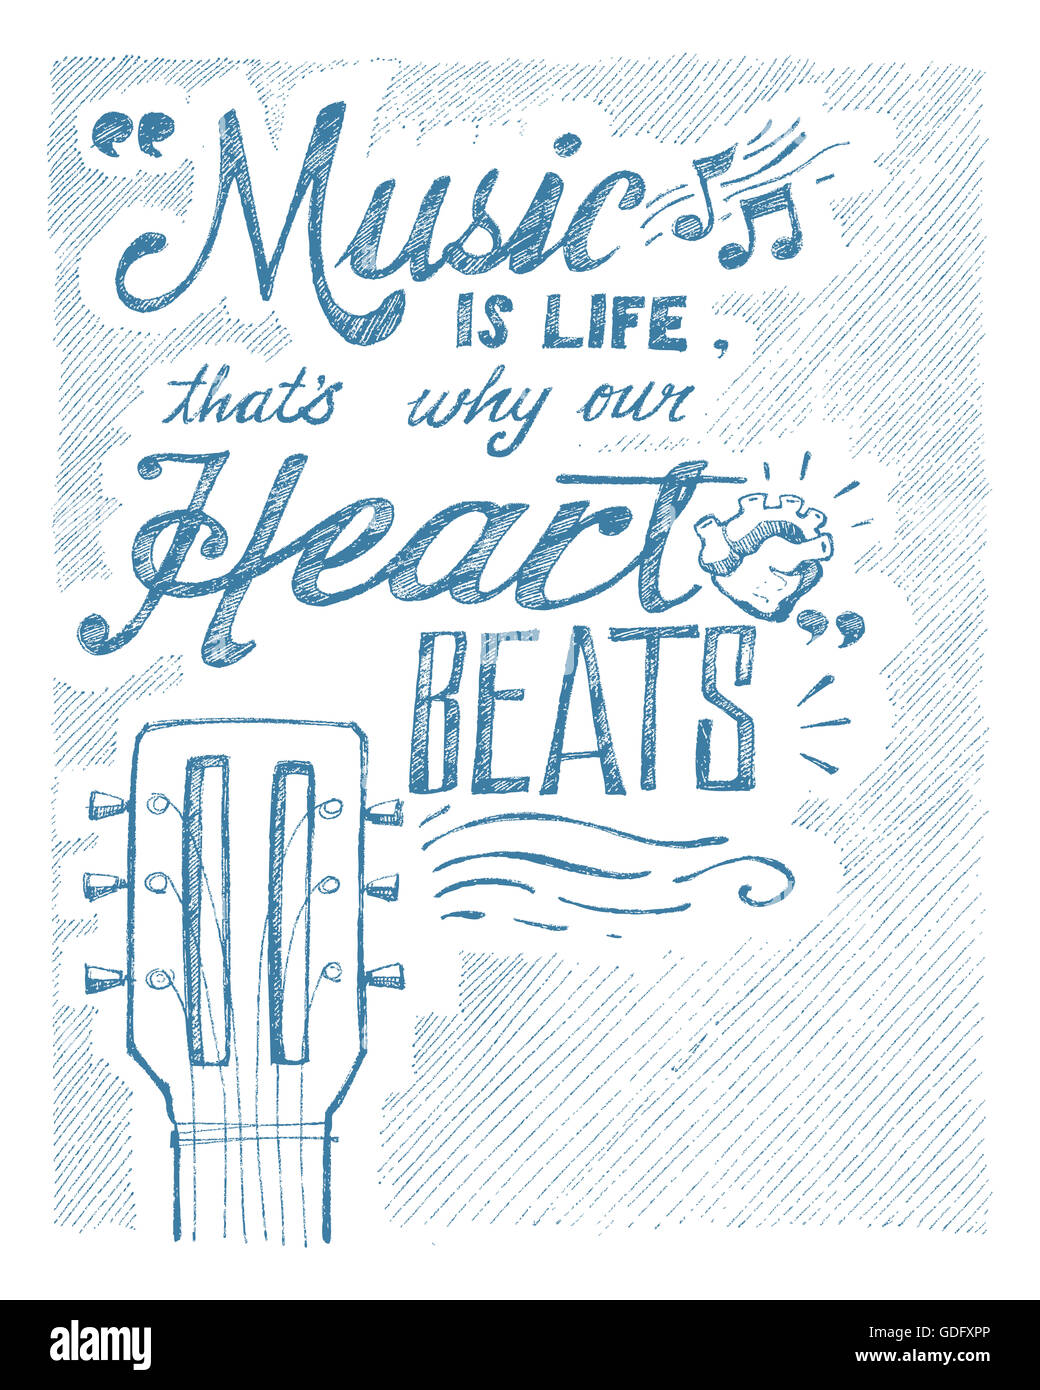 Handgezeichnete Illustrationen oder Zeichnung der Satz: Musik ist das Leben, das ist, warum unser Herz schlägt Stockfoto